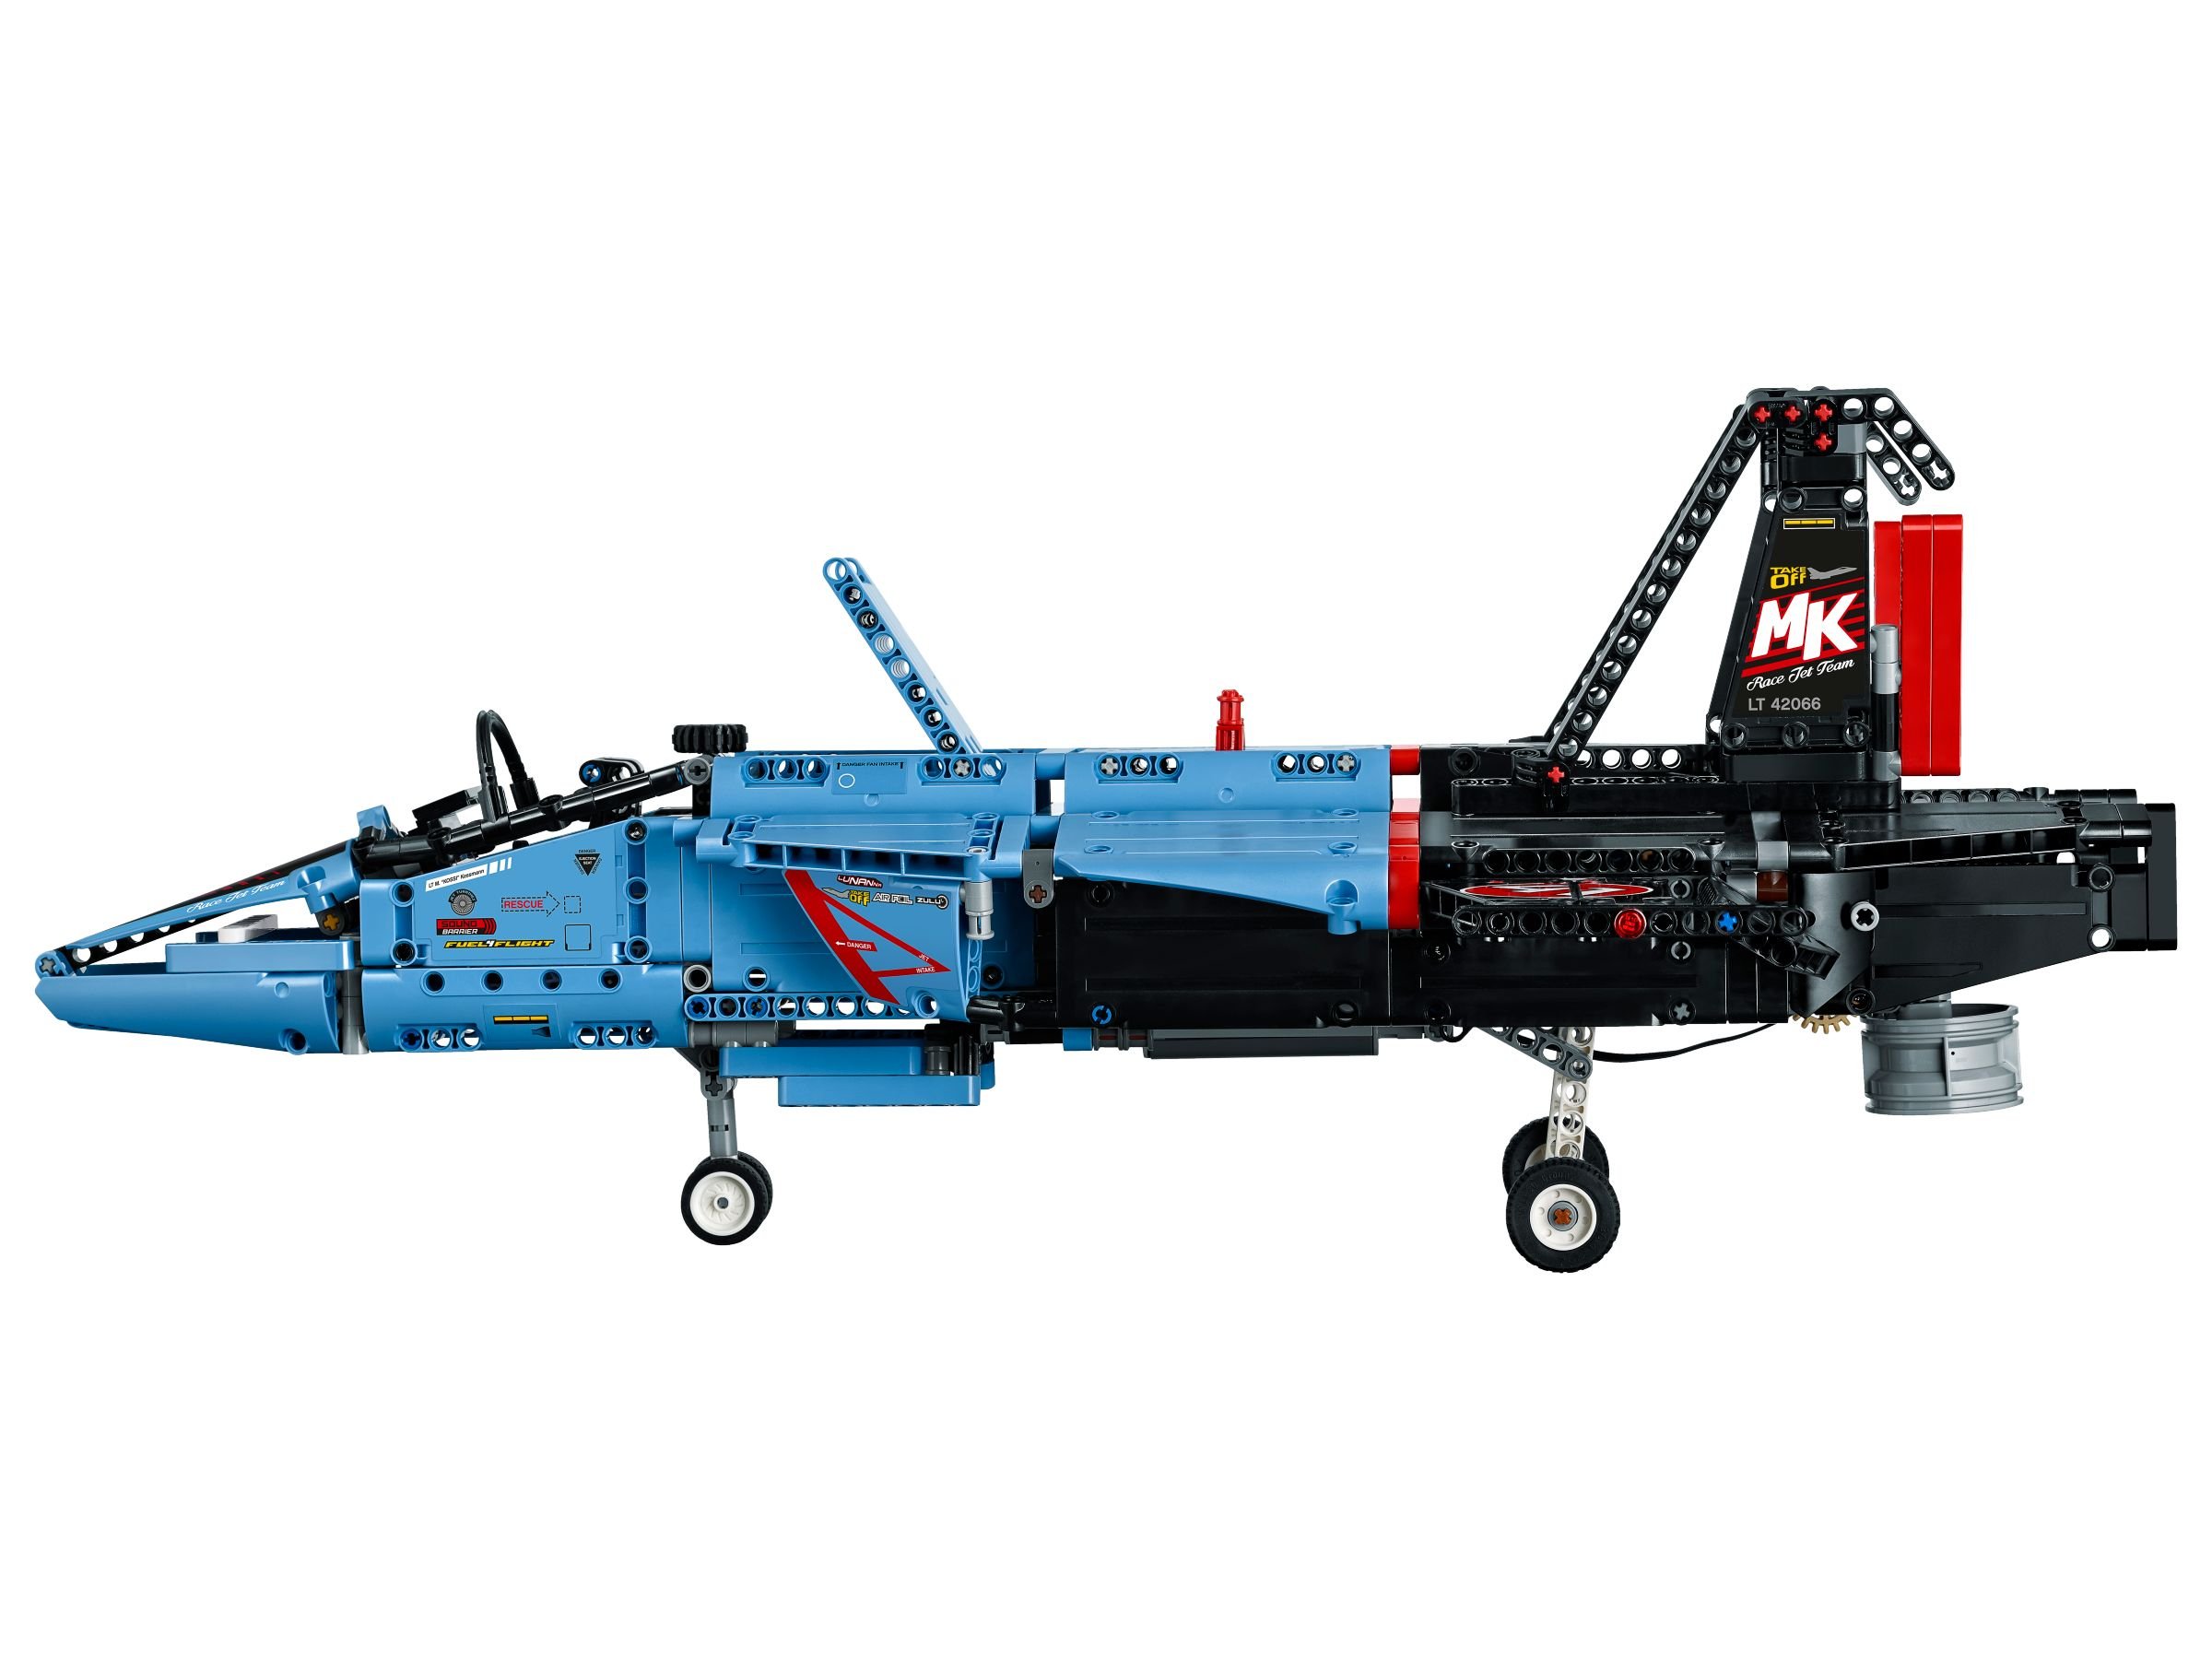 LEGO Technic 42066 Air Race Jet LEGO_42066_alt4.jpg